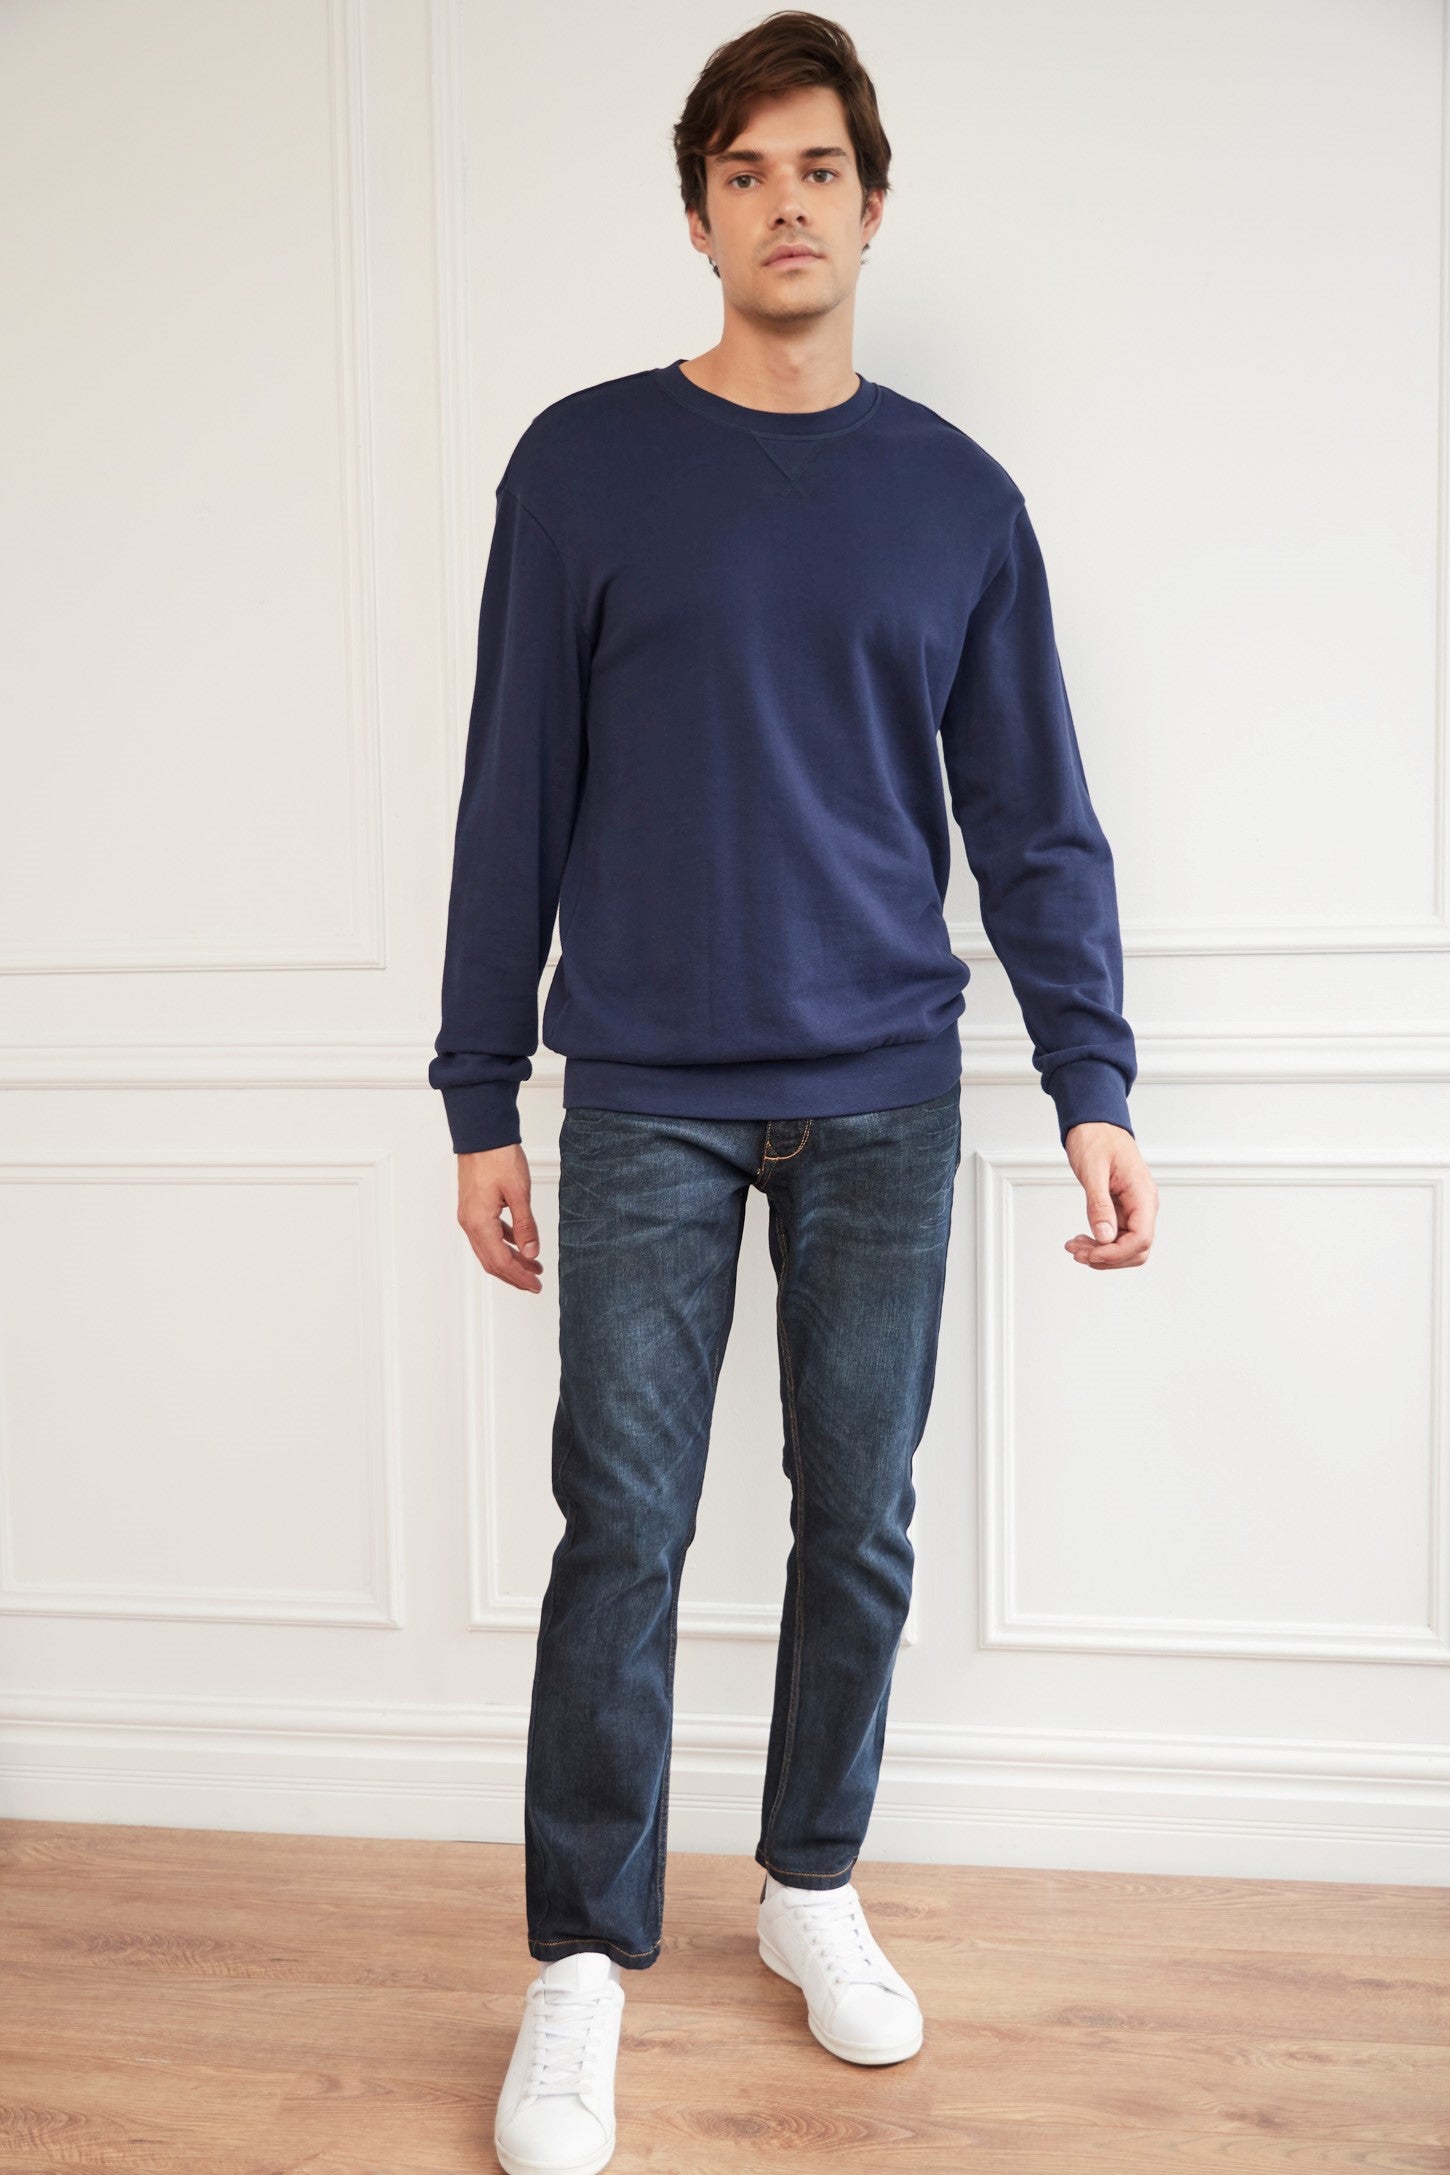 Jeans bleu foncé coupe régulière - Homme && MARIN